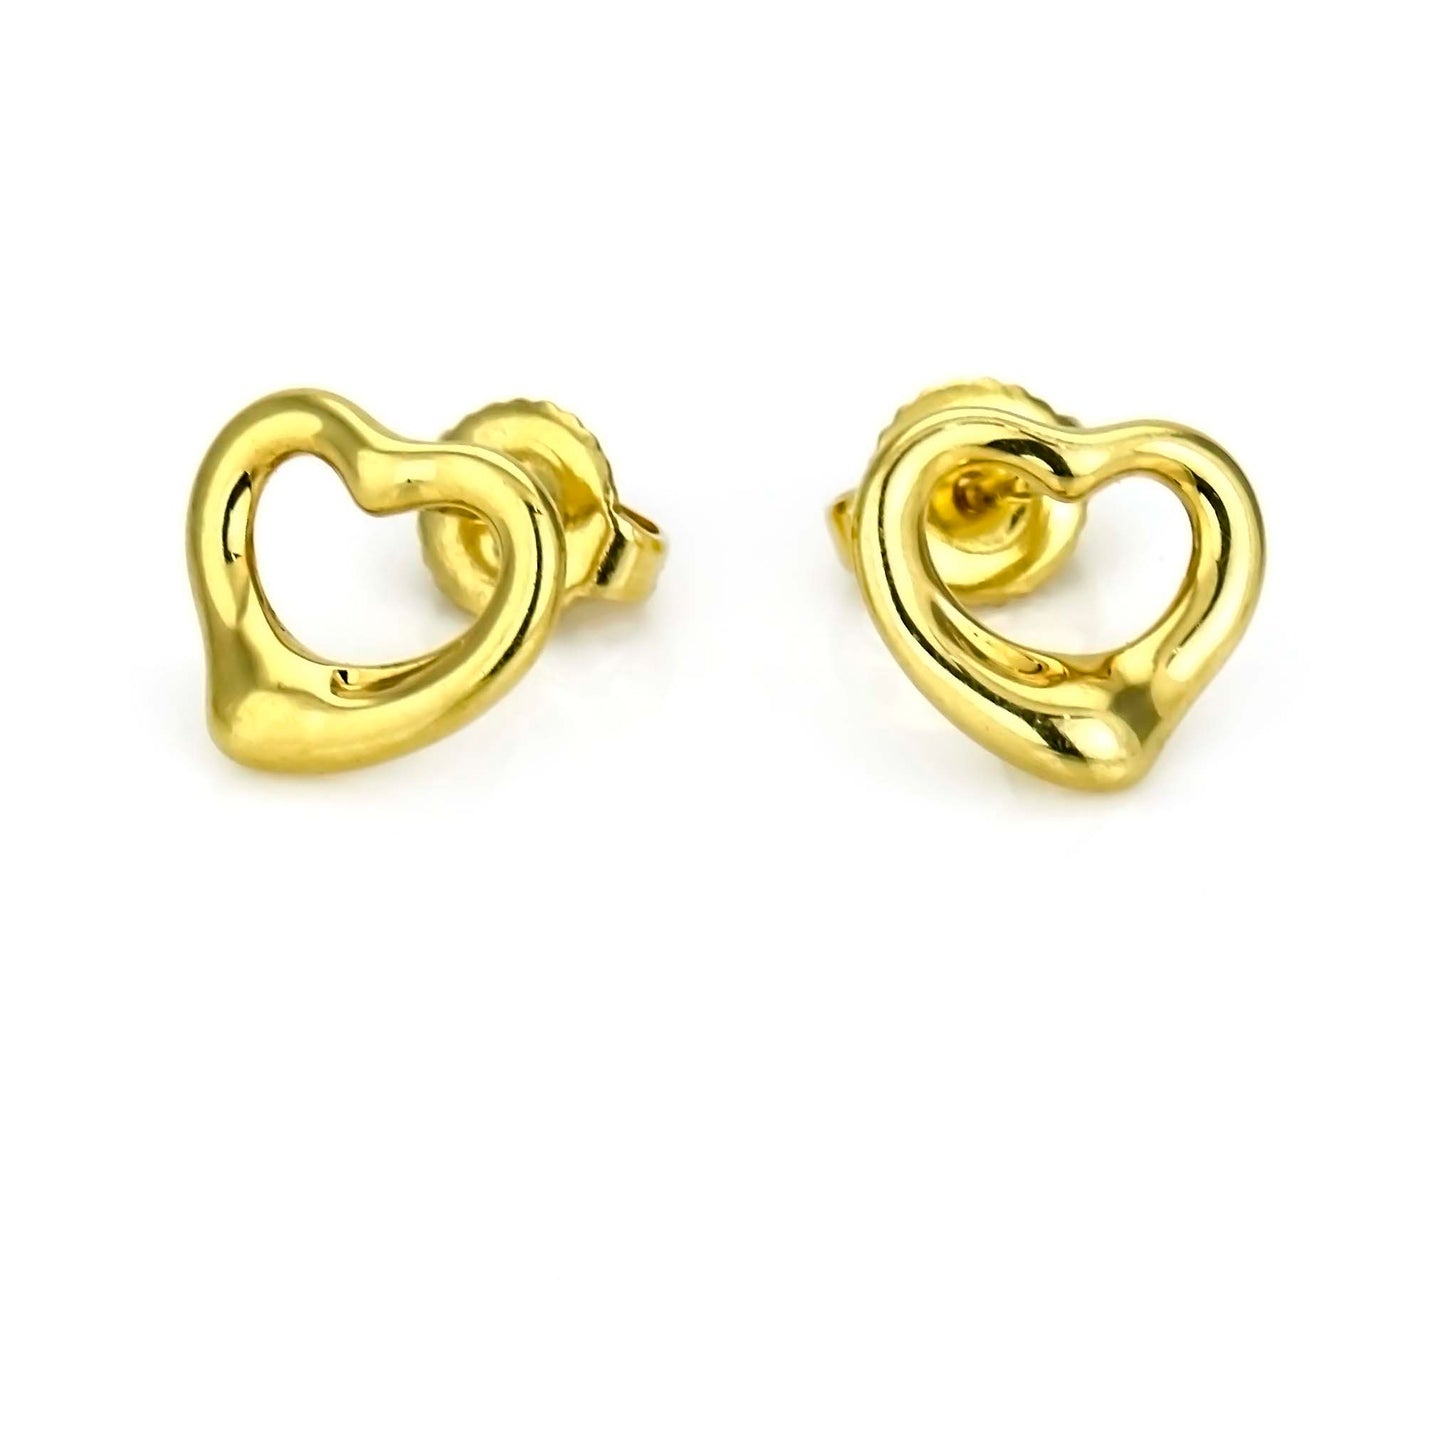 Tiffany & Co. Elsa Peretti 11mm Open Heart Earrings in 18k Yellow Gold